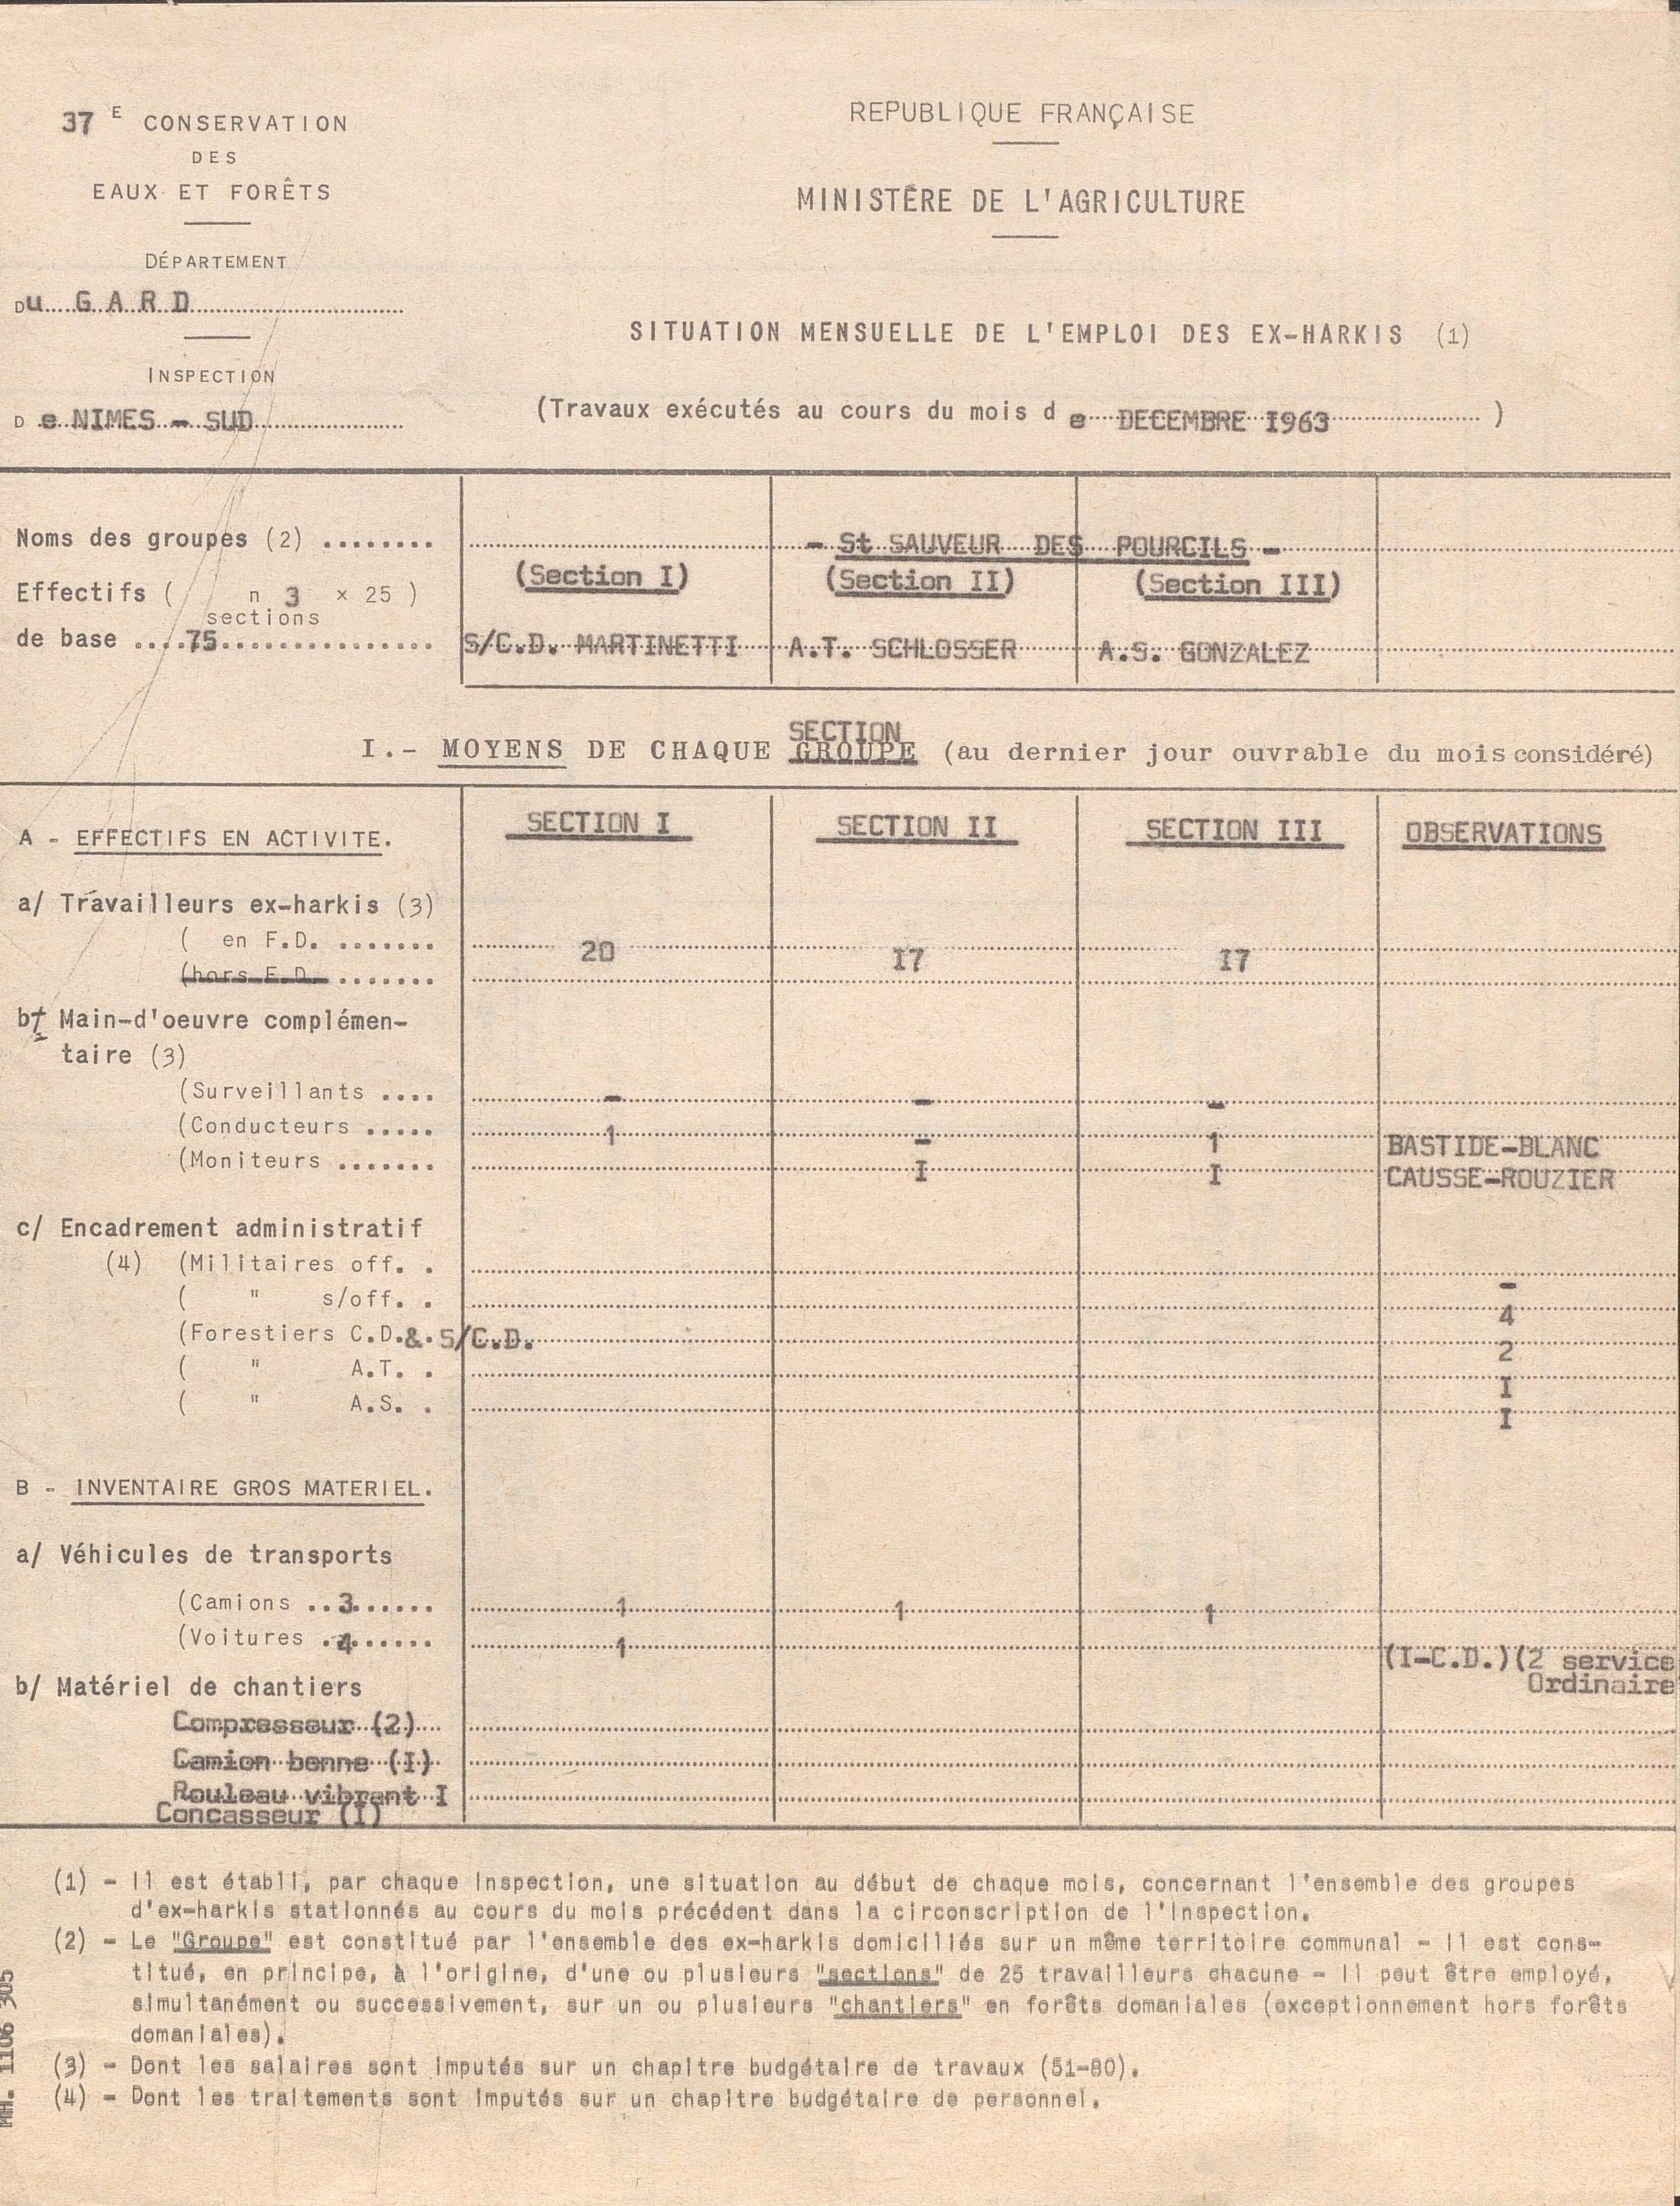 Illustration 7 : Situation mensuelle de l’emploi des ex-harkis : travaux exécutés au mois de décembre 1963, (Archives du Gard 7W387)